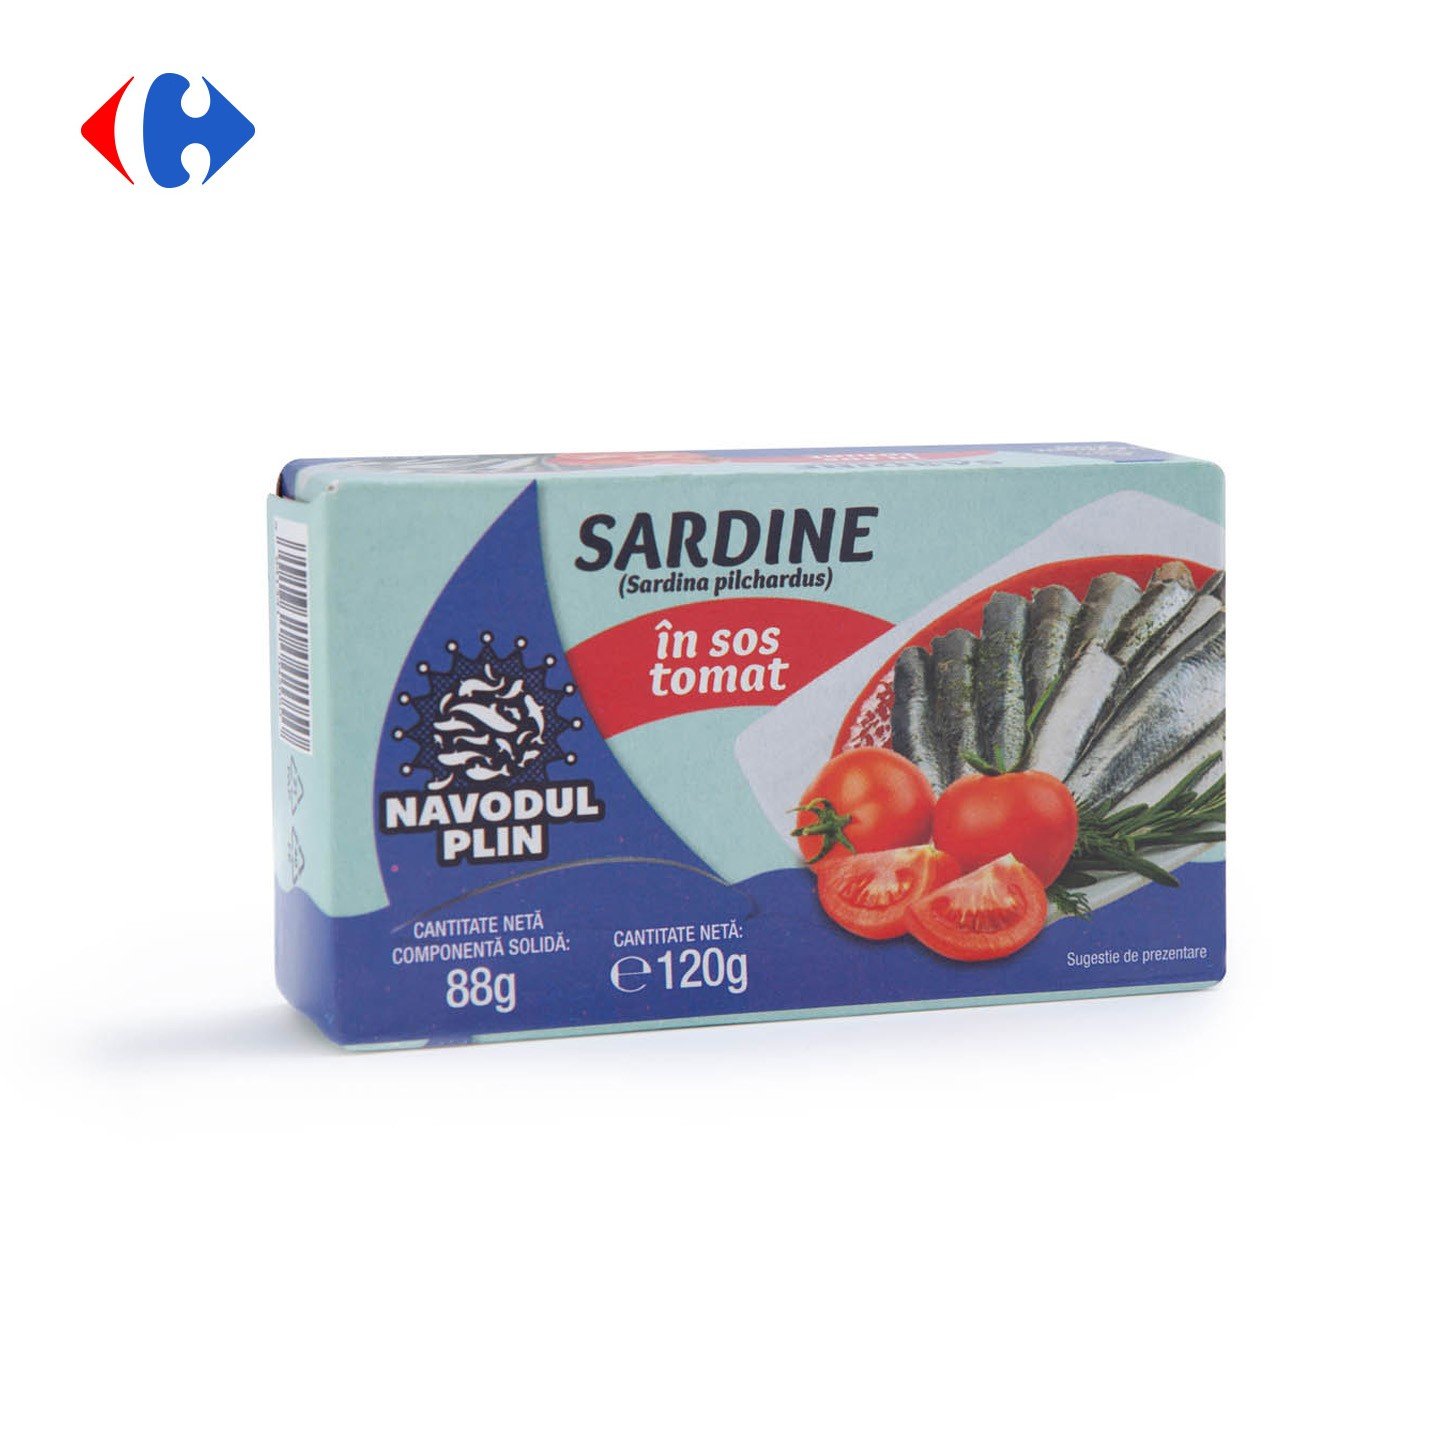 Sardine în sos tomat, Năvodul Plin 120g